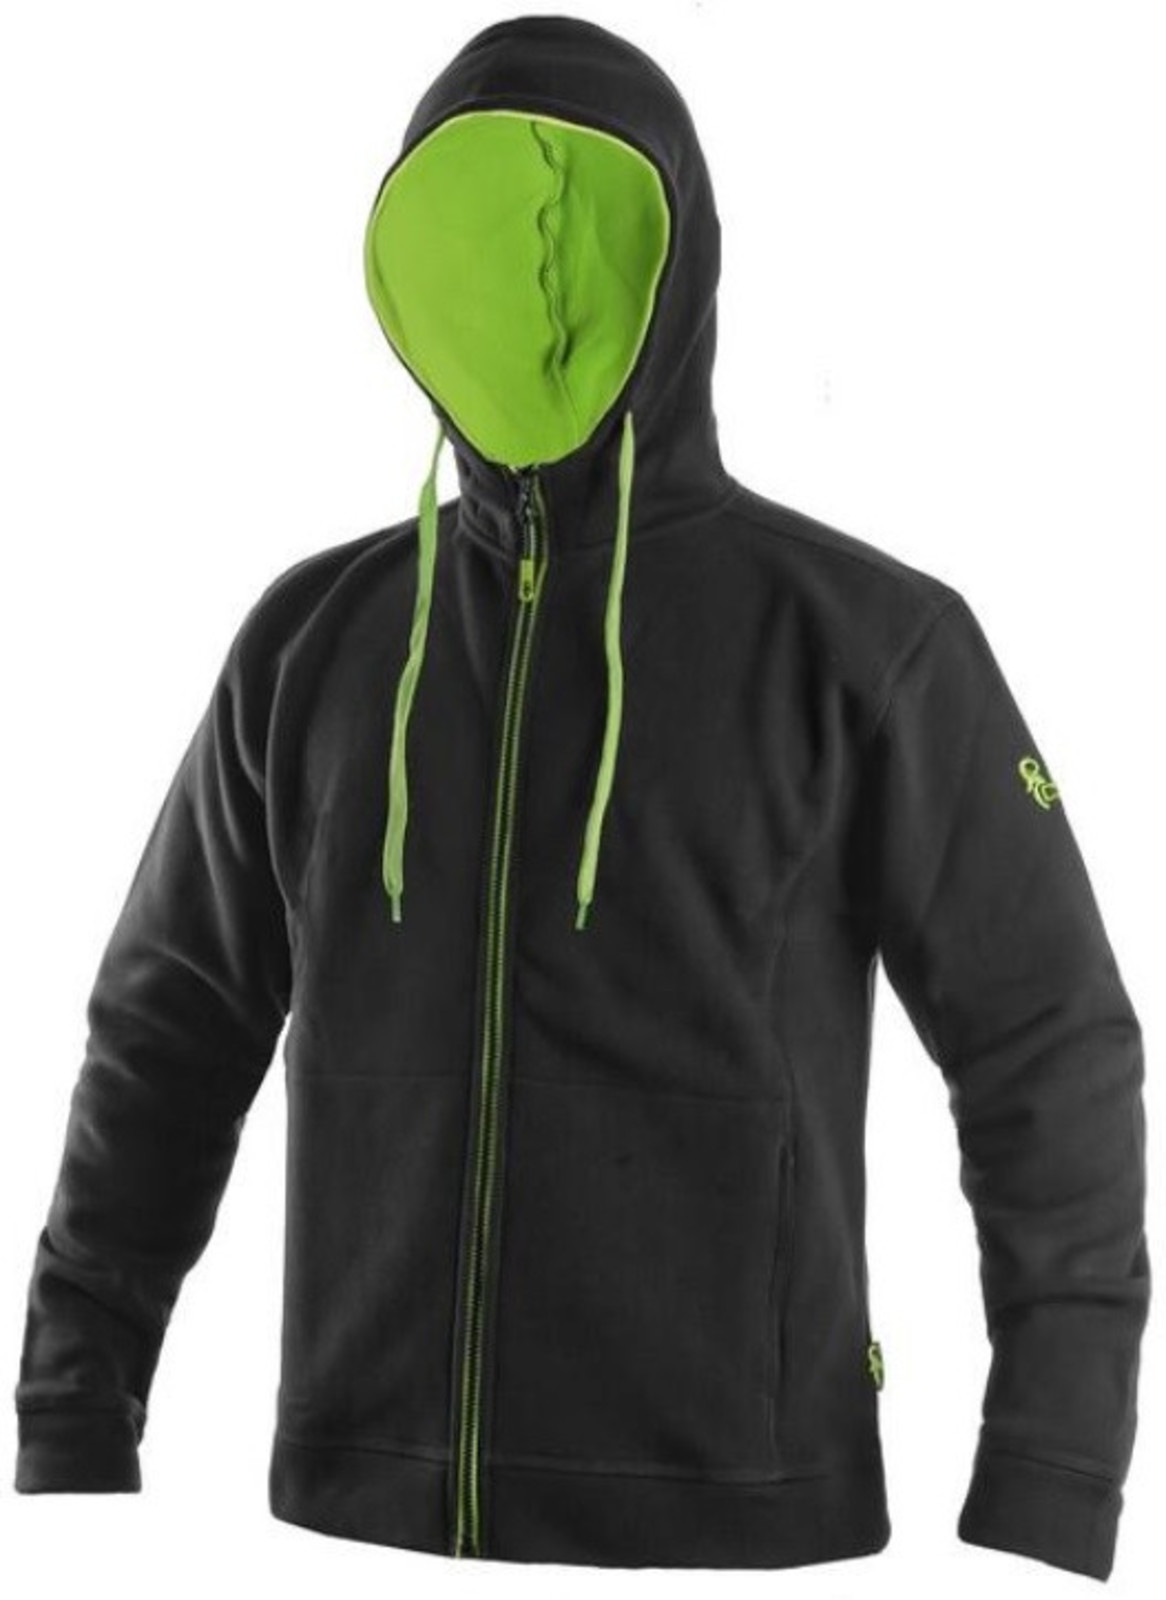 Mikina na zips s kapucňou CXS Harrison - veľkosť: XL, farba: čierna/zelená